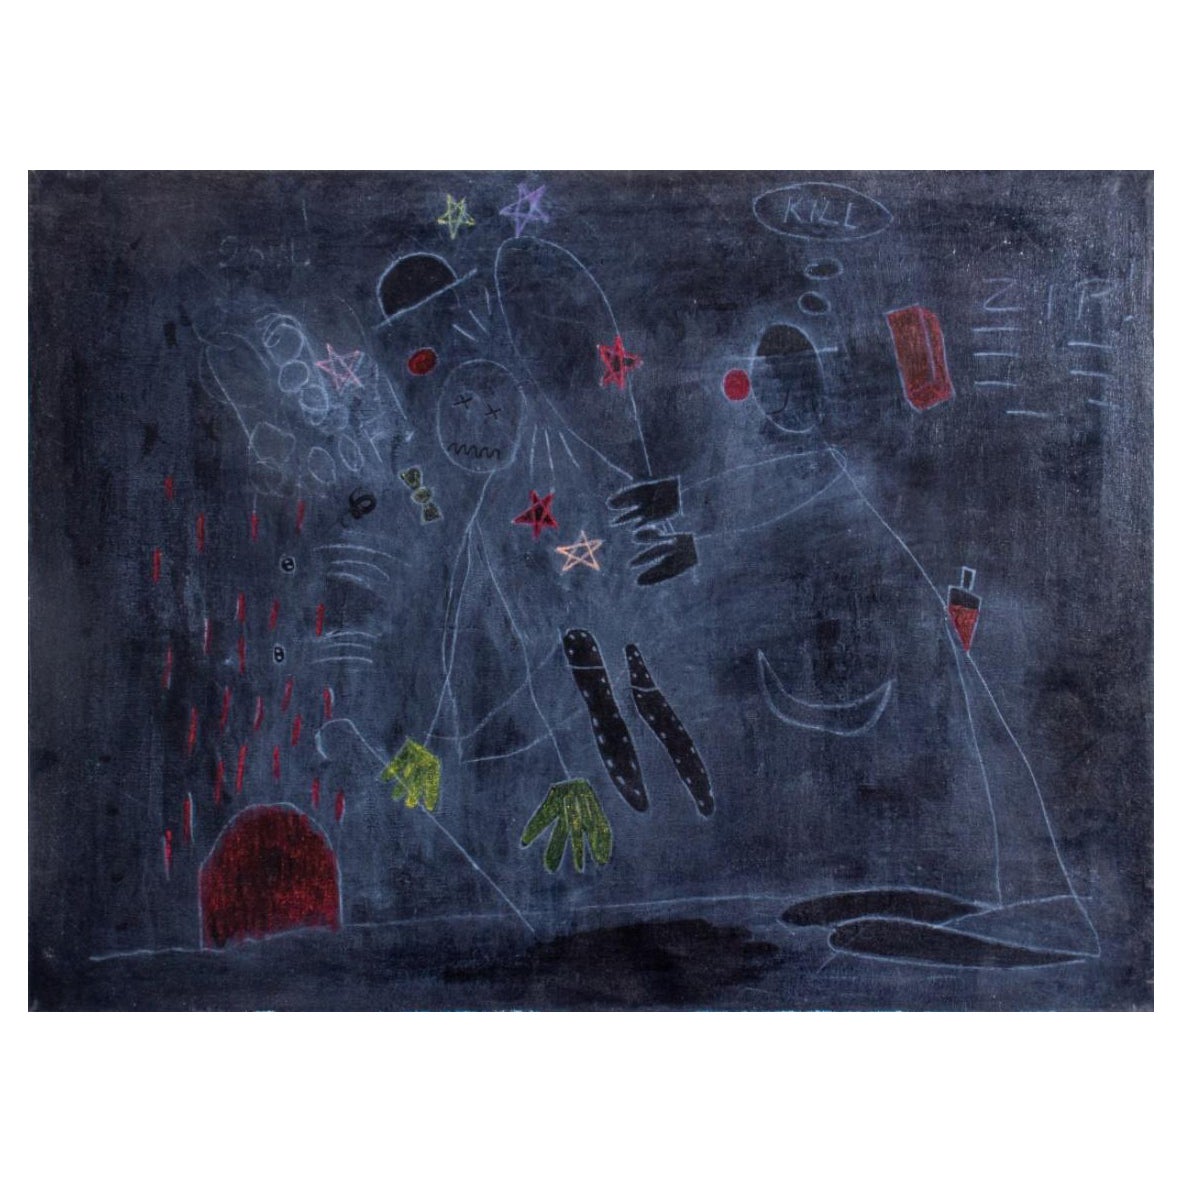 Dominic Capobianco "Kill" Acrylic & Chalk